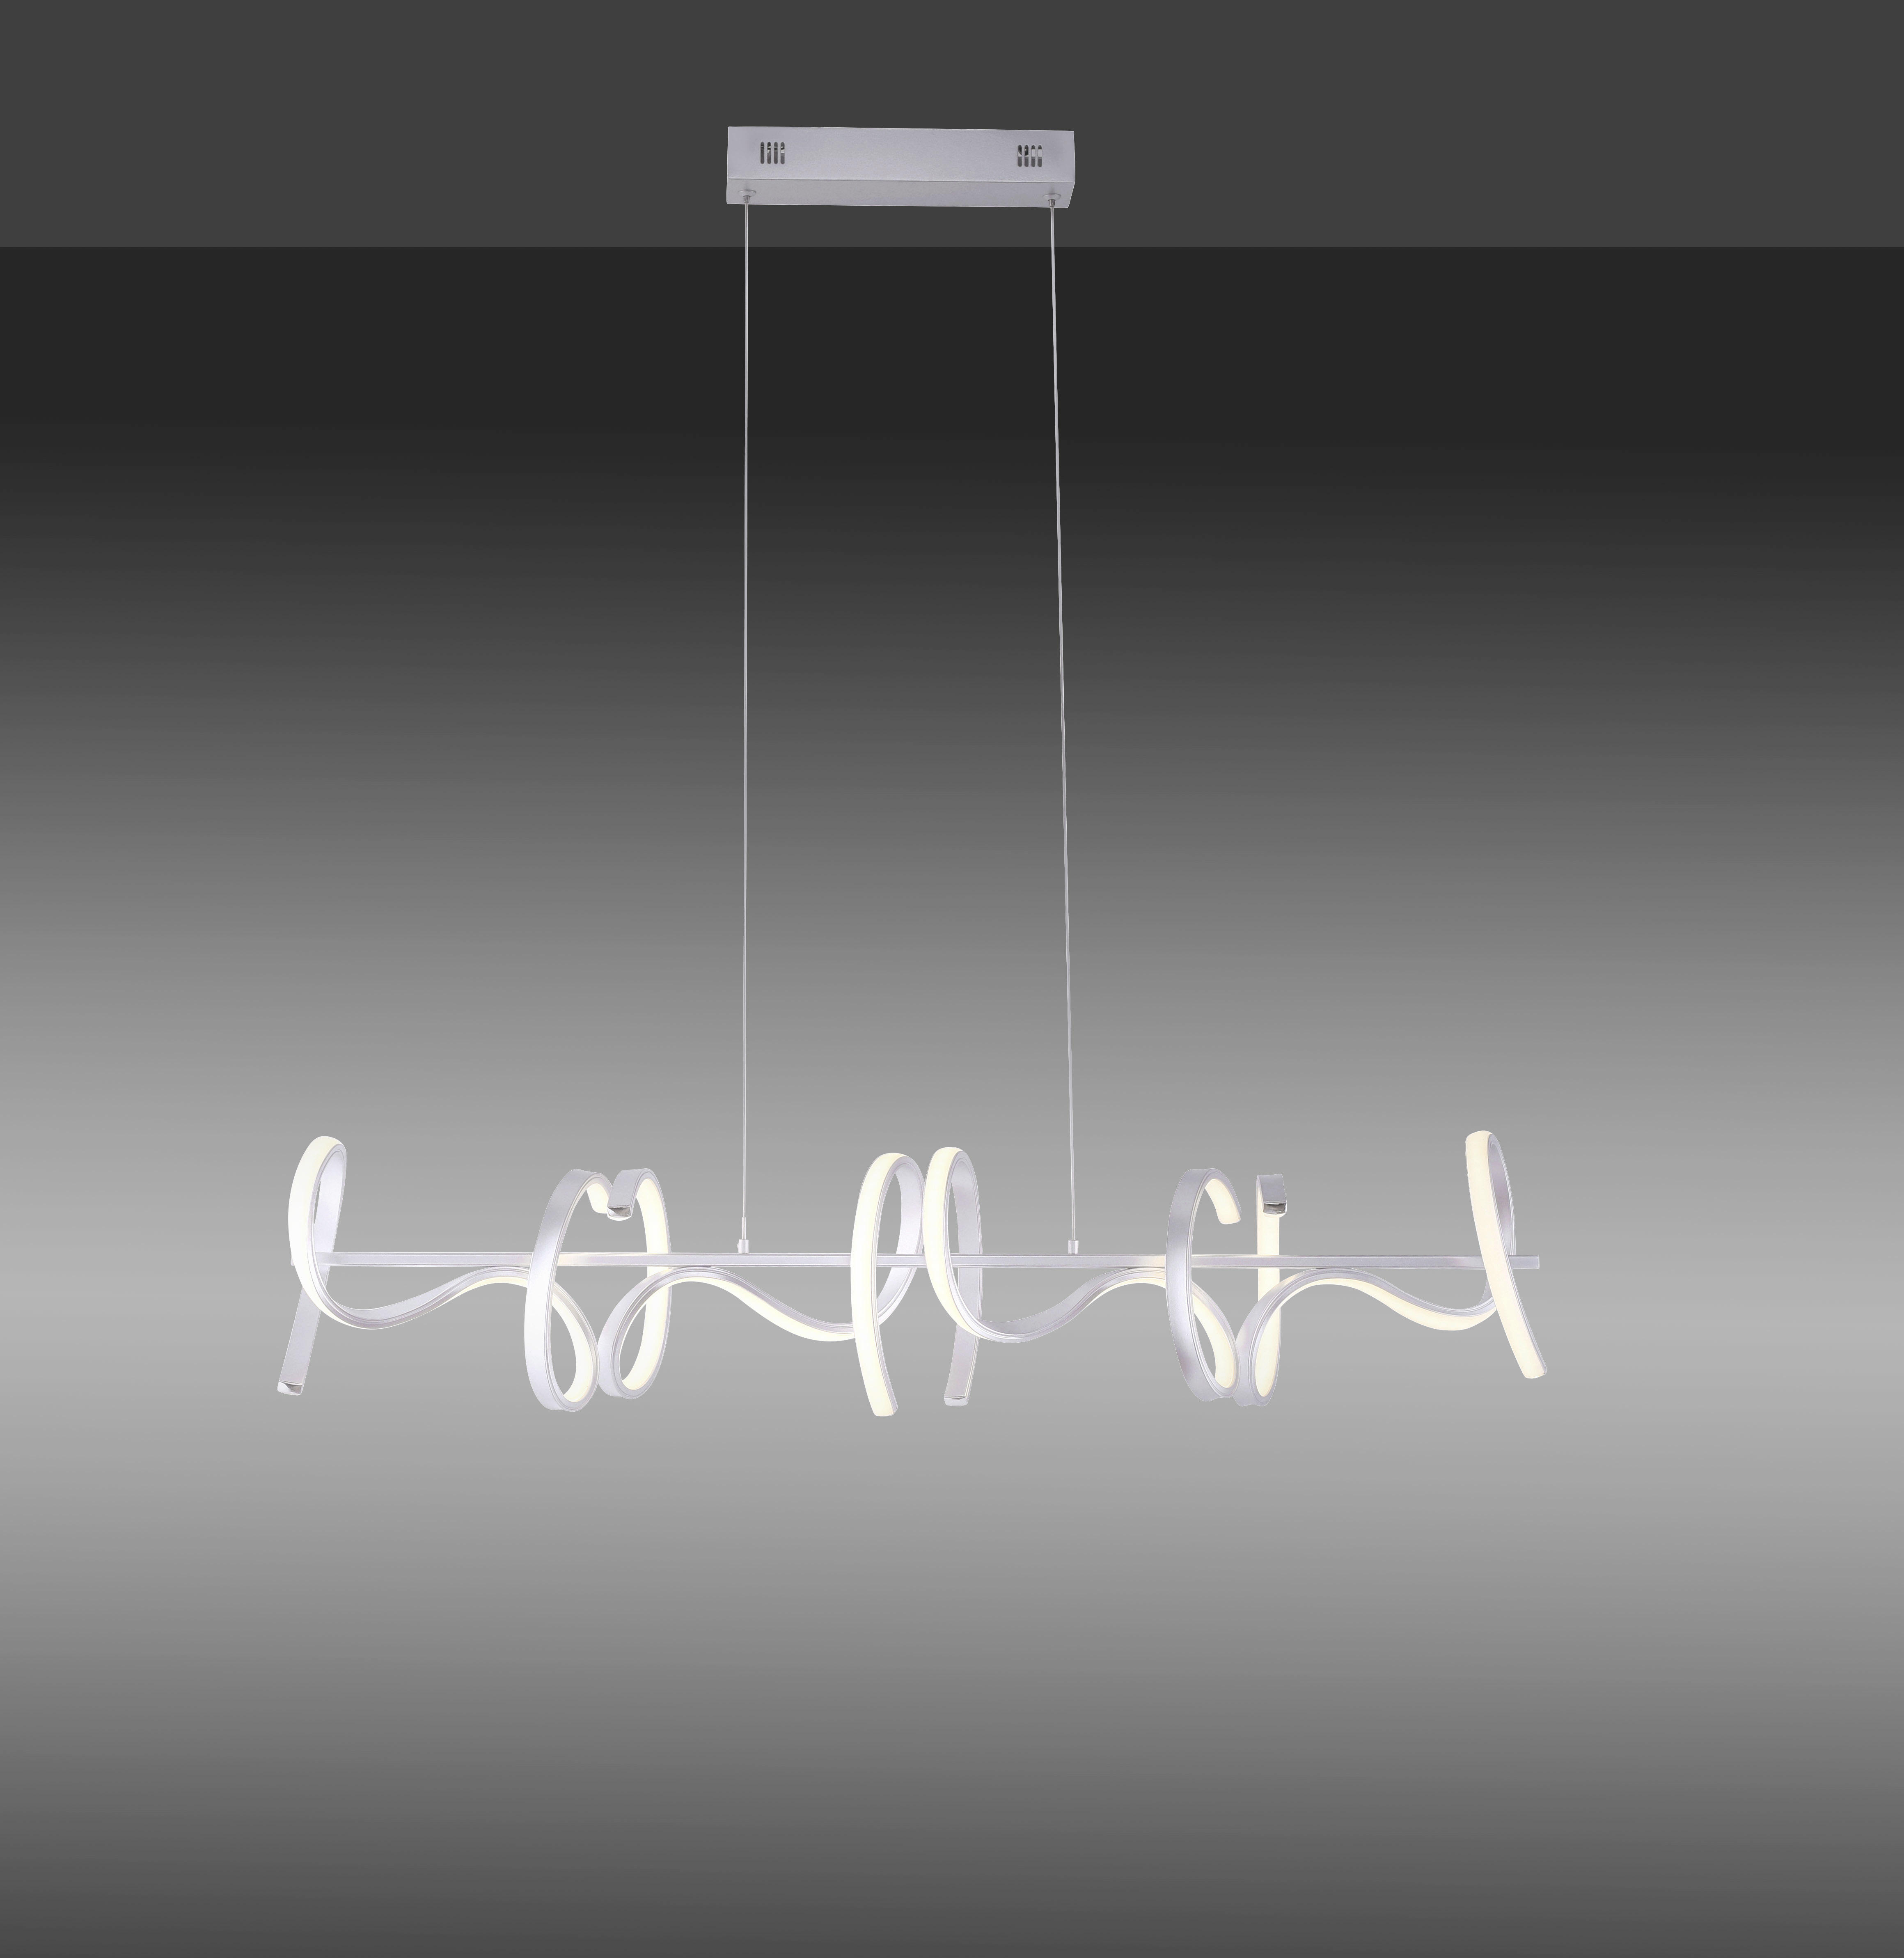 LED-HÄNGELEUCHTE Curls 99/21/135 cm   - Silberfarben, Design, Metall (99/21/135cm)